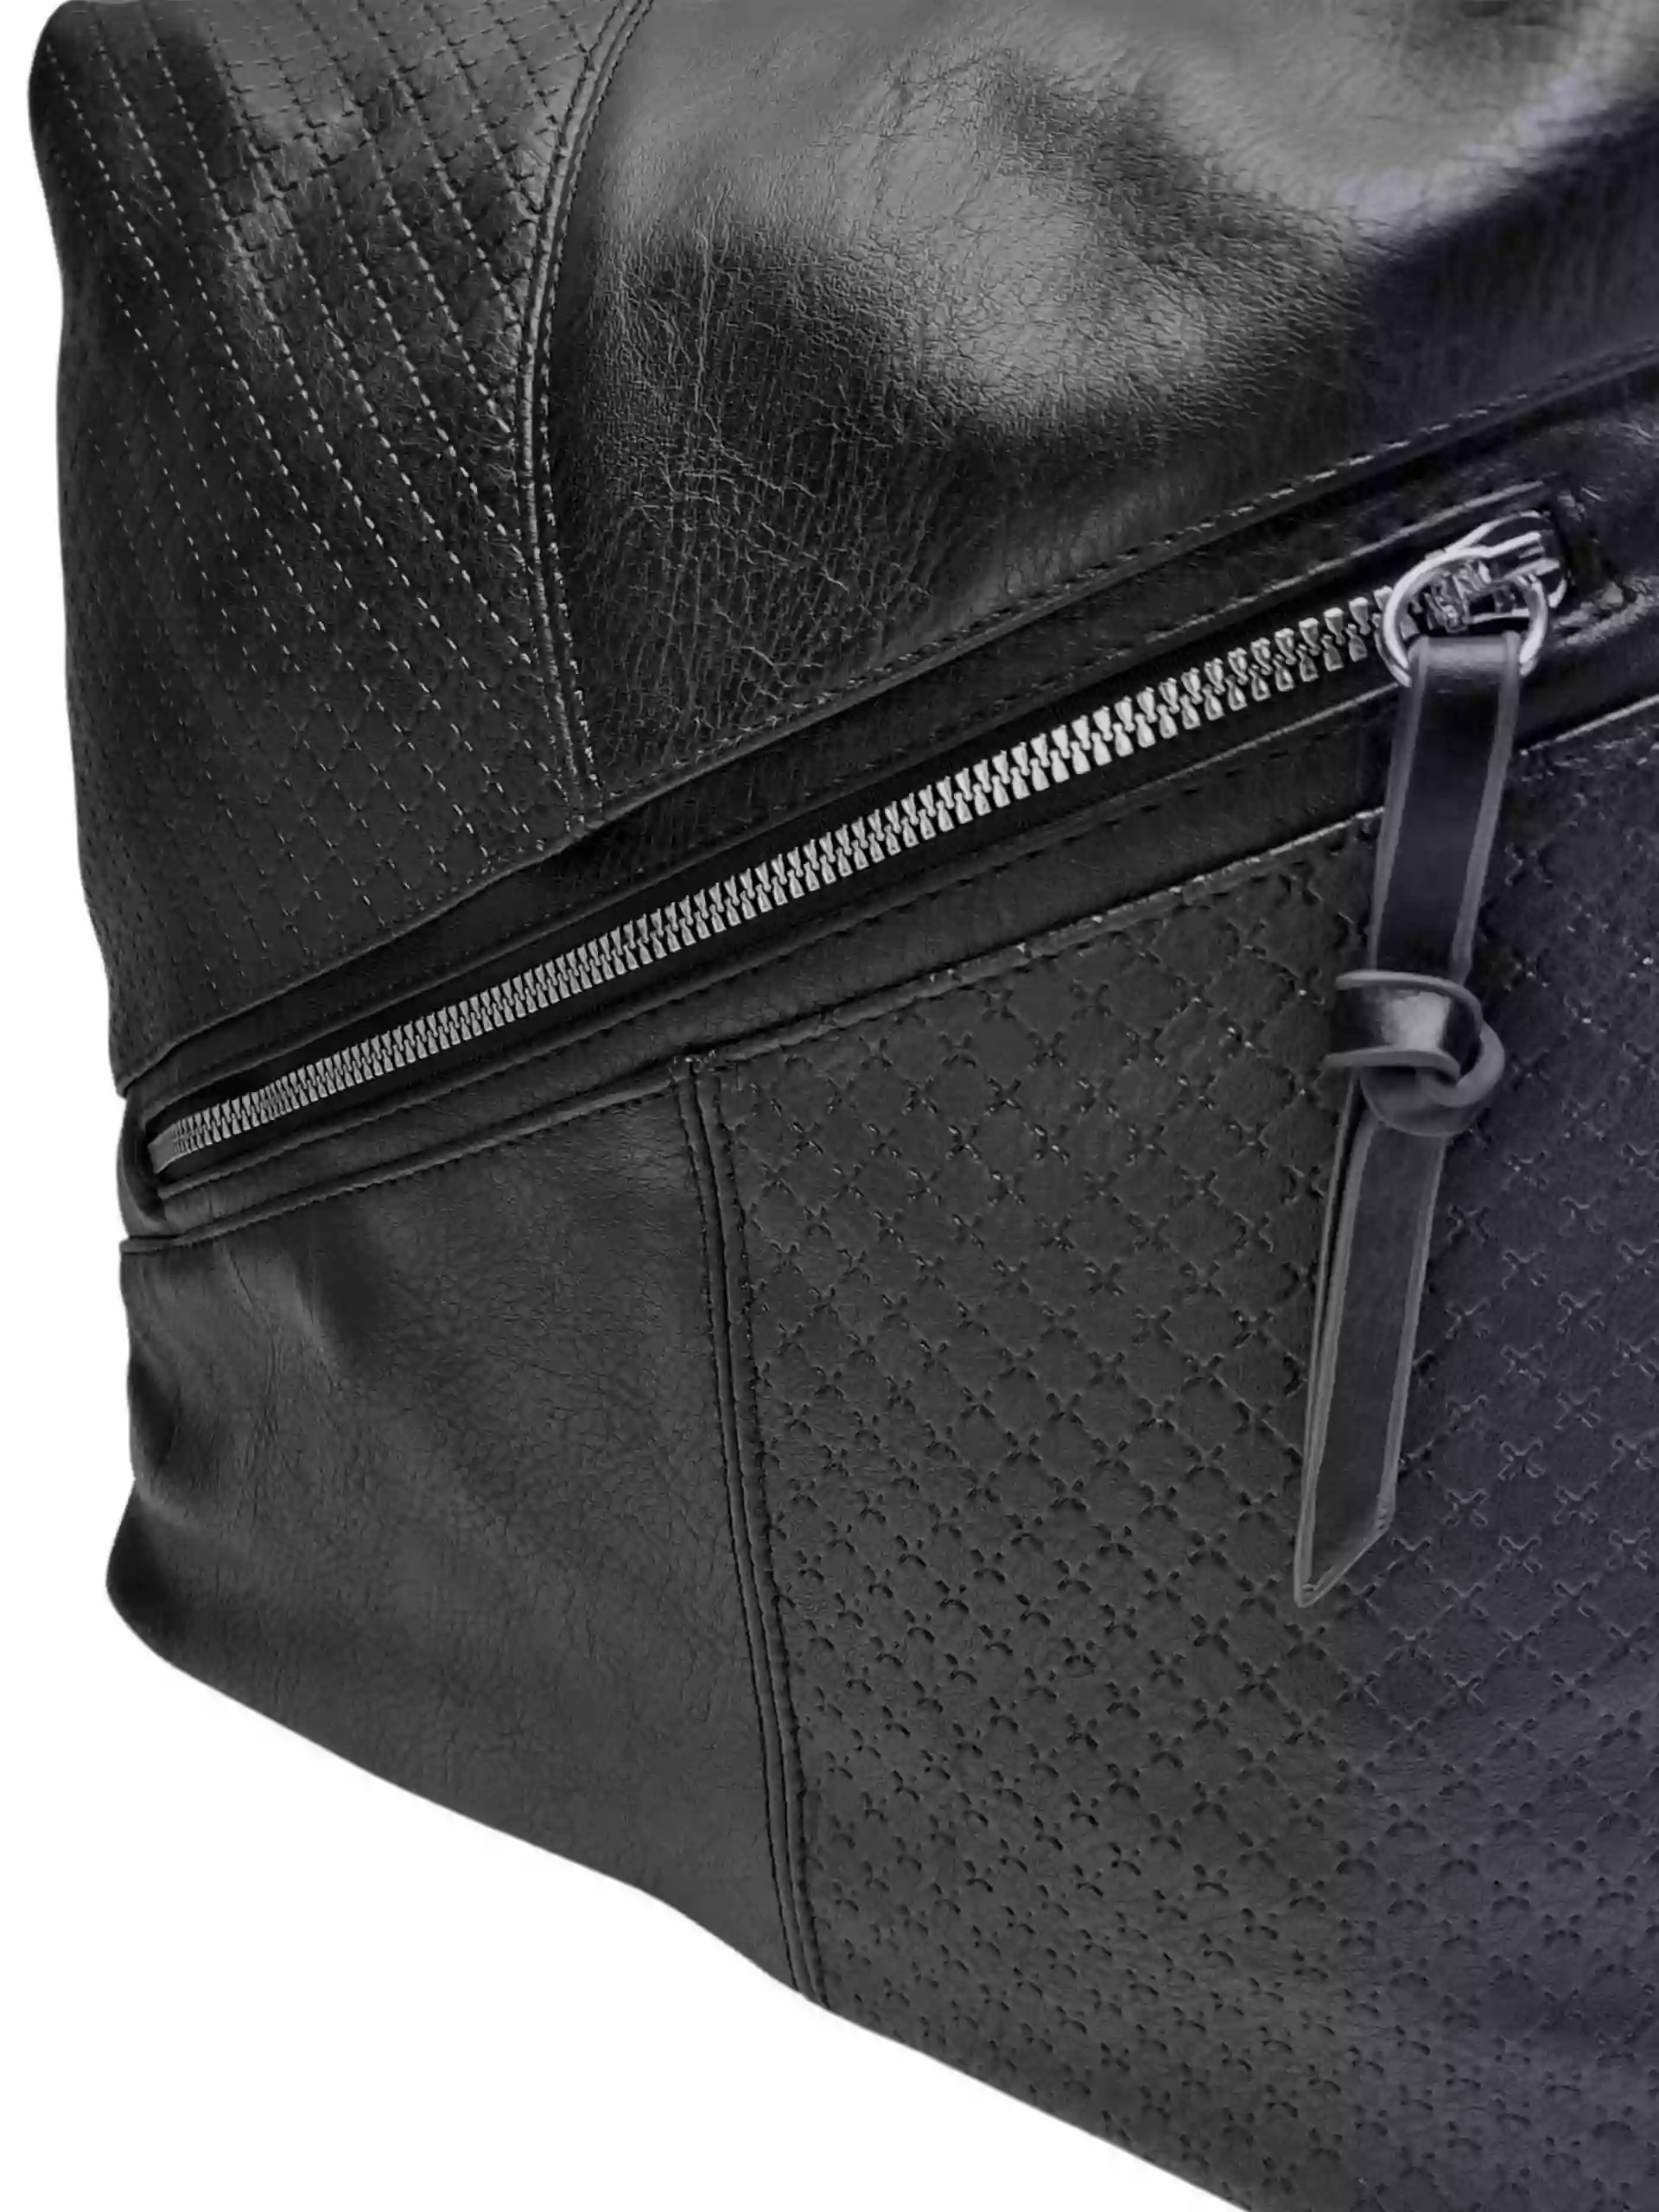 Velký černý kabelko-batoh s šikmou kapsou, Tapple, H18077N2, detail kabelko-batohu 2v1